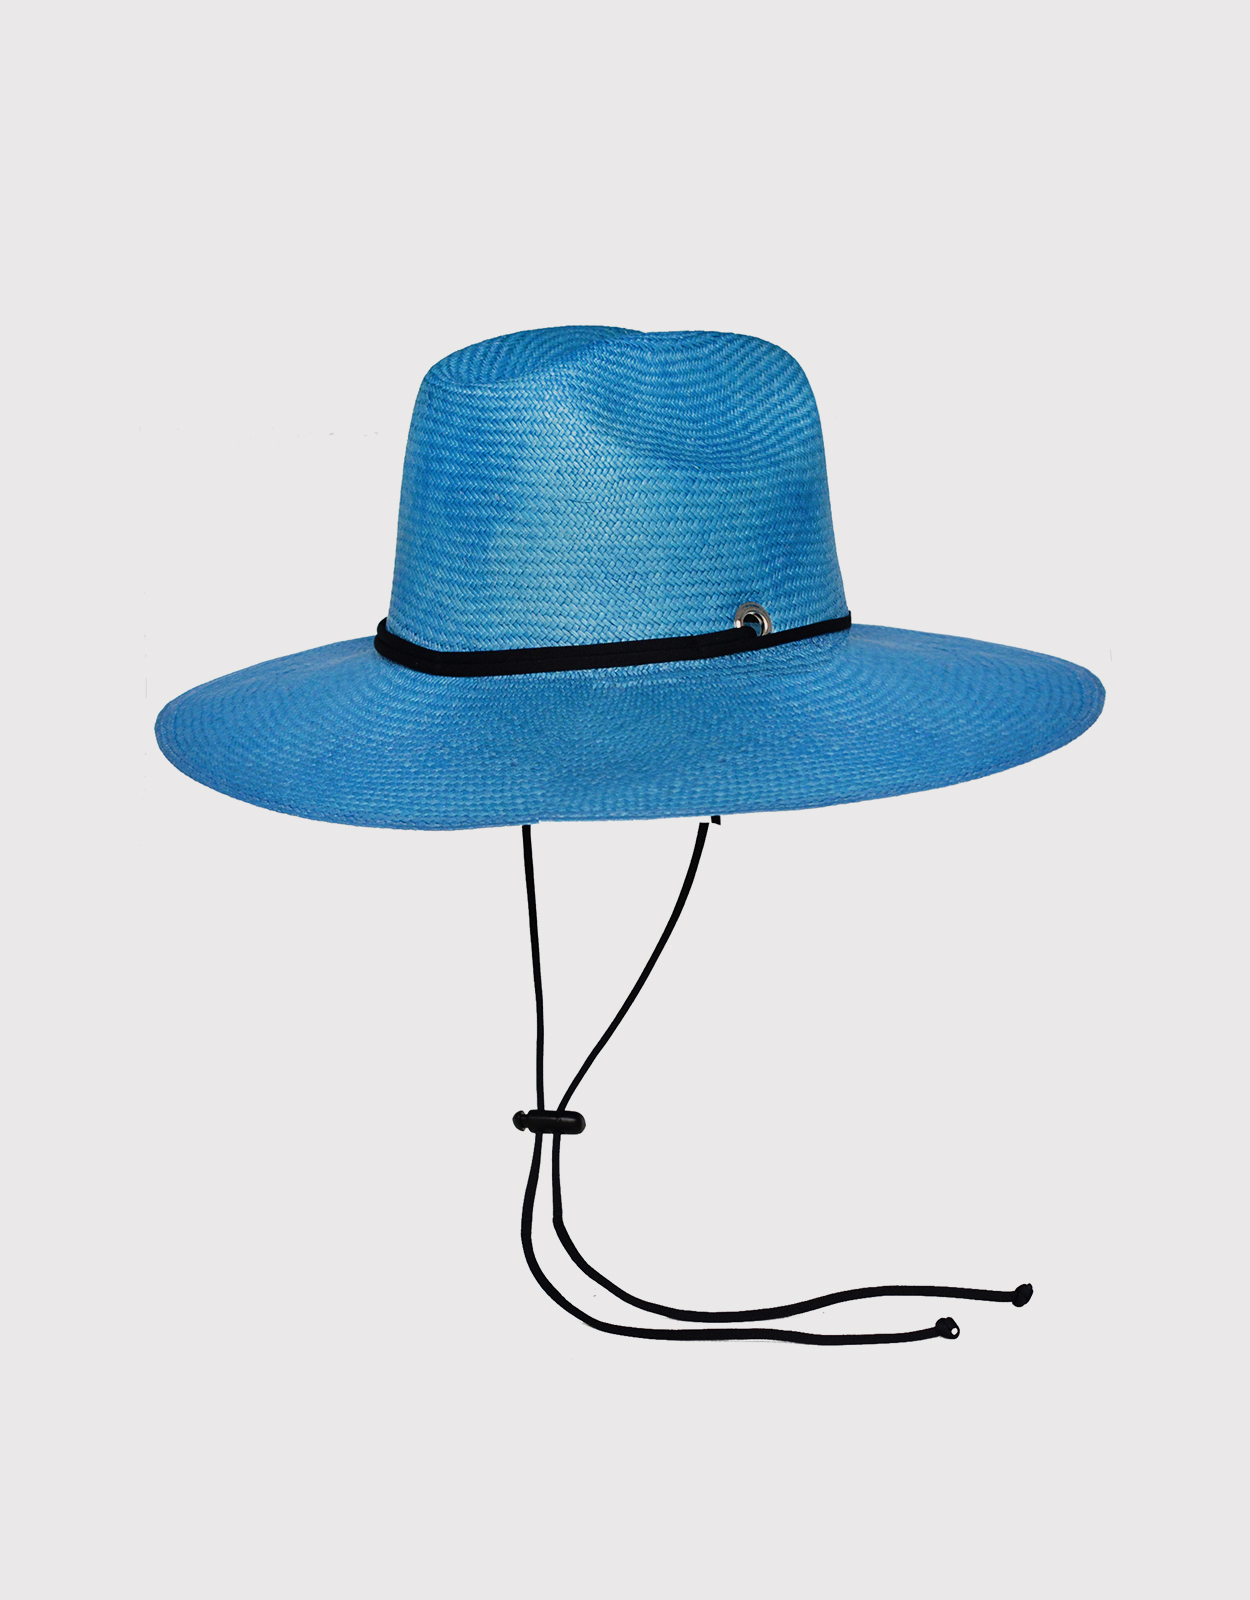 Sensi Studio - Texas Long Brim Panama Hat - S